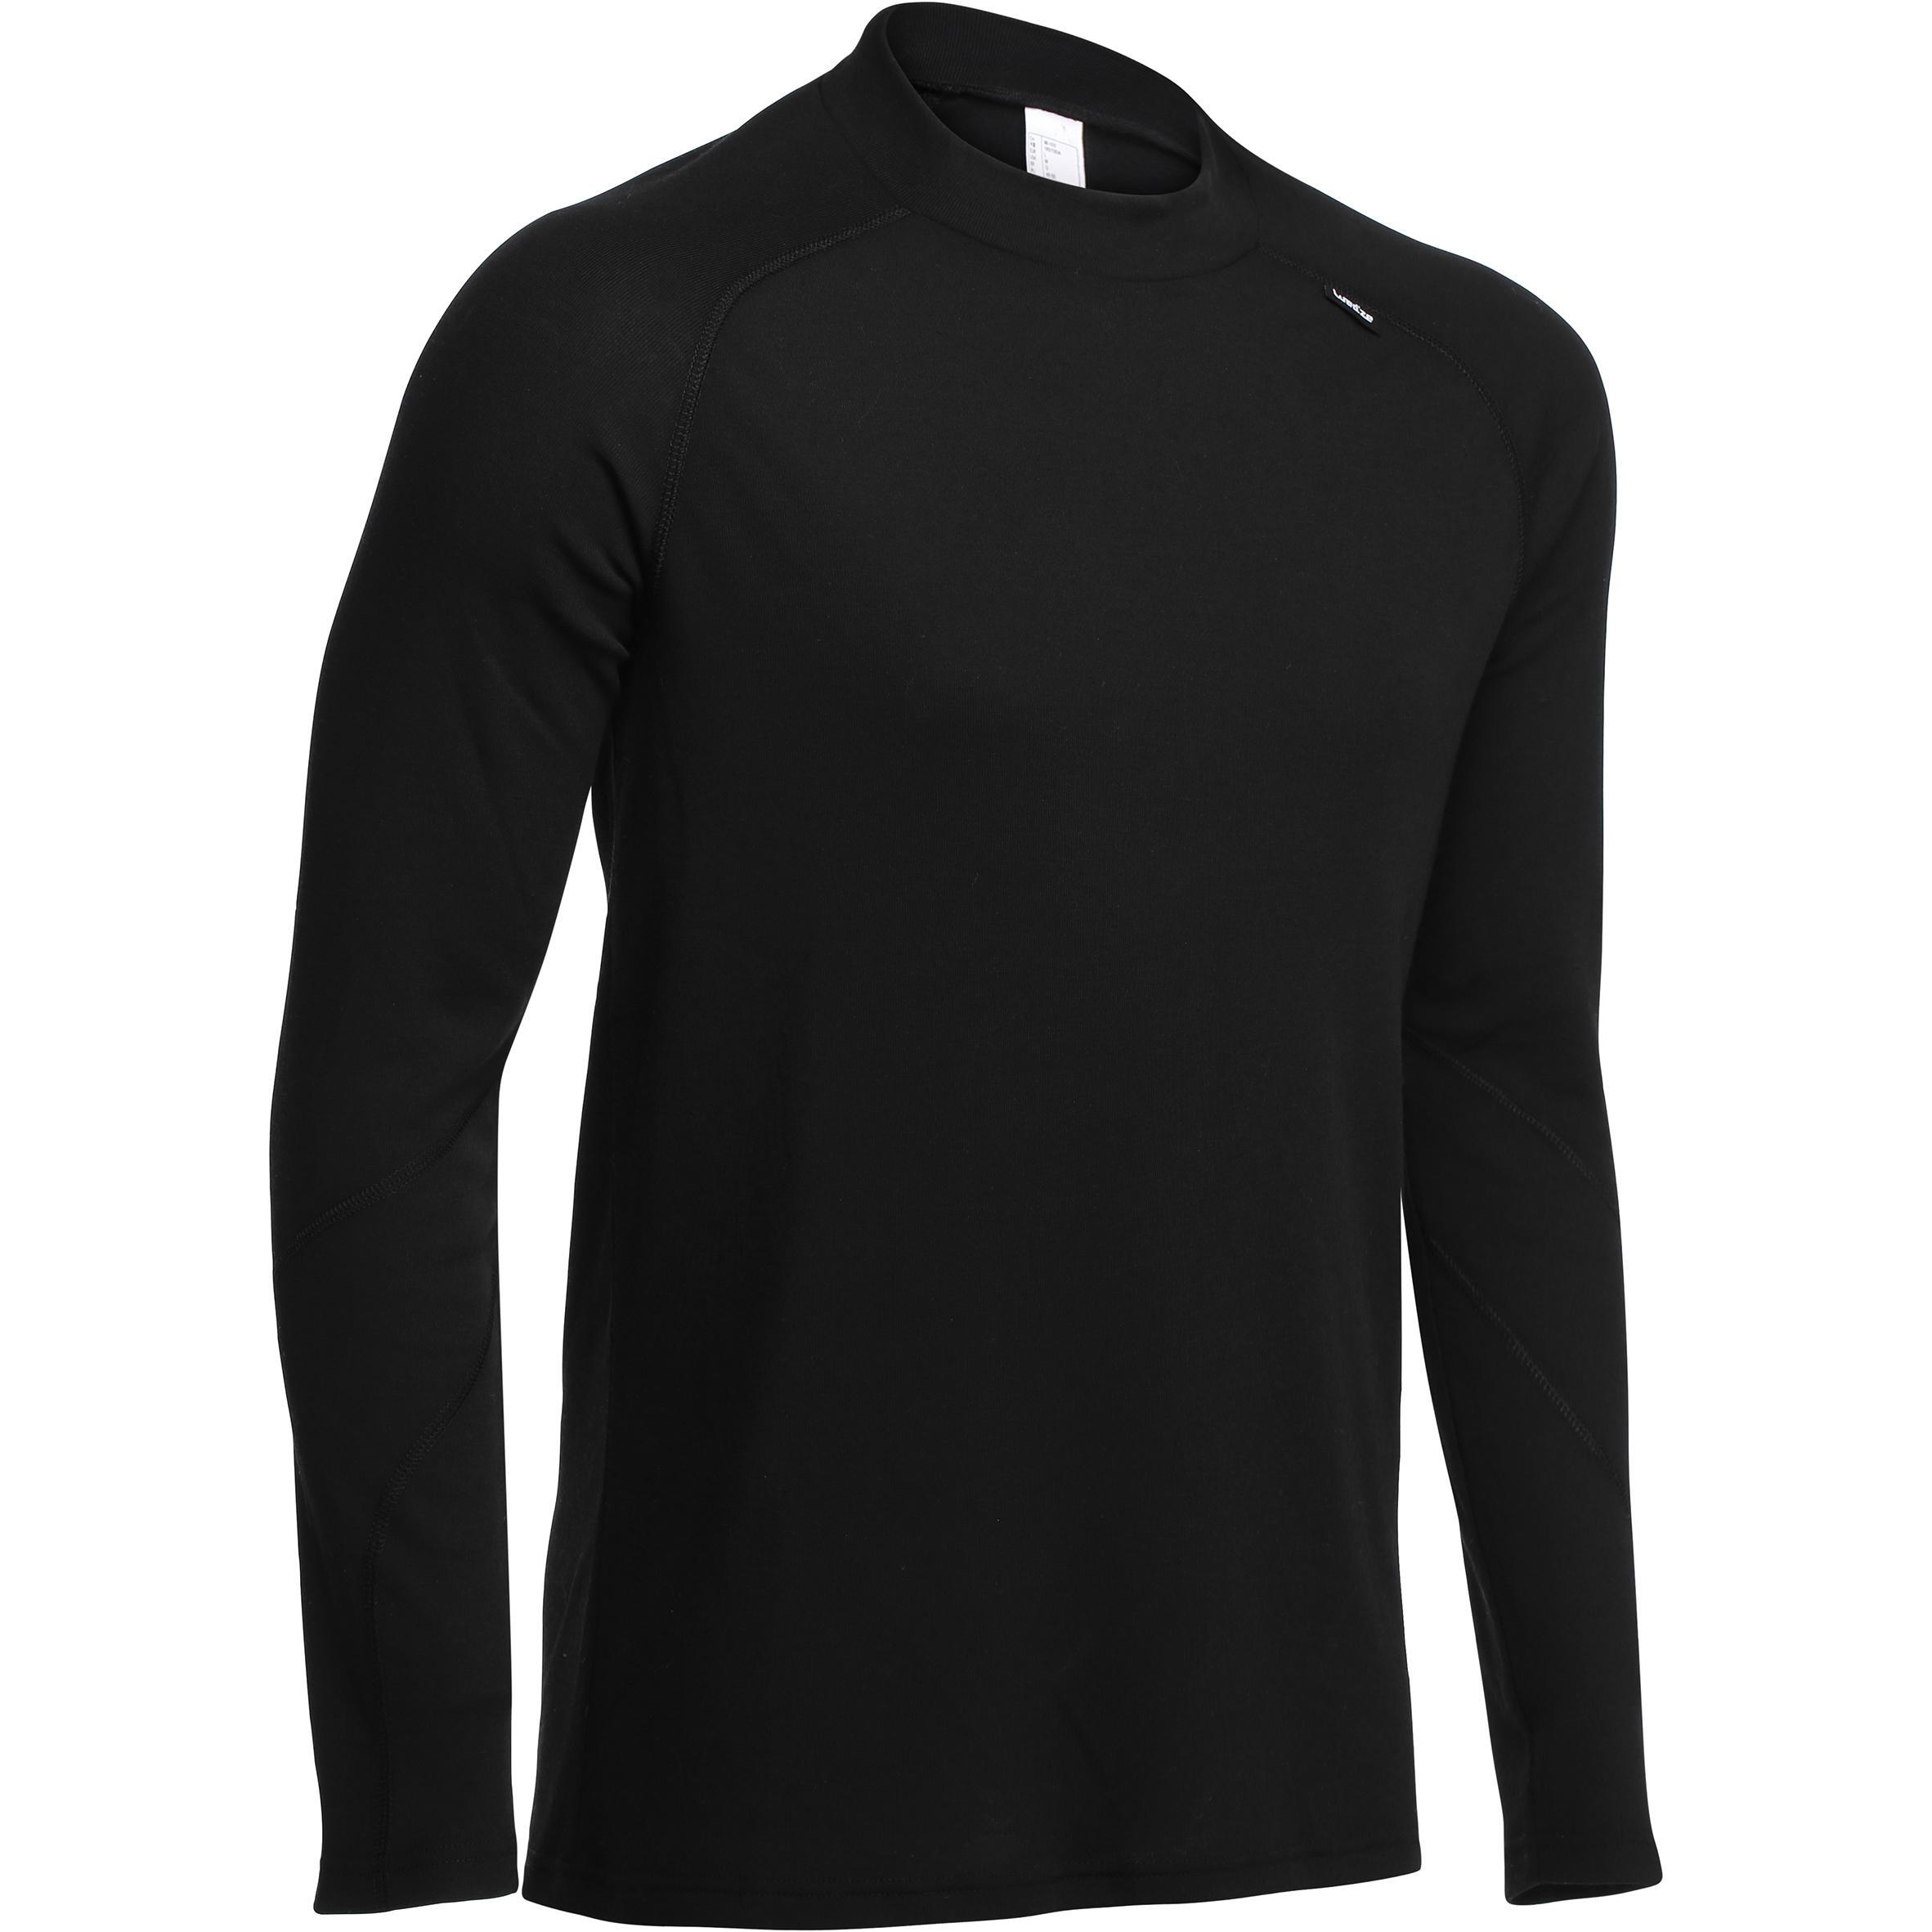 [ด่วน!! โปรโมชั่นมีจำนวนจำกัด]เสื้อตัวในเพื่อการเล่นสกีสำหรับผู้ชาย SIMPLE WARM (สีดำ)